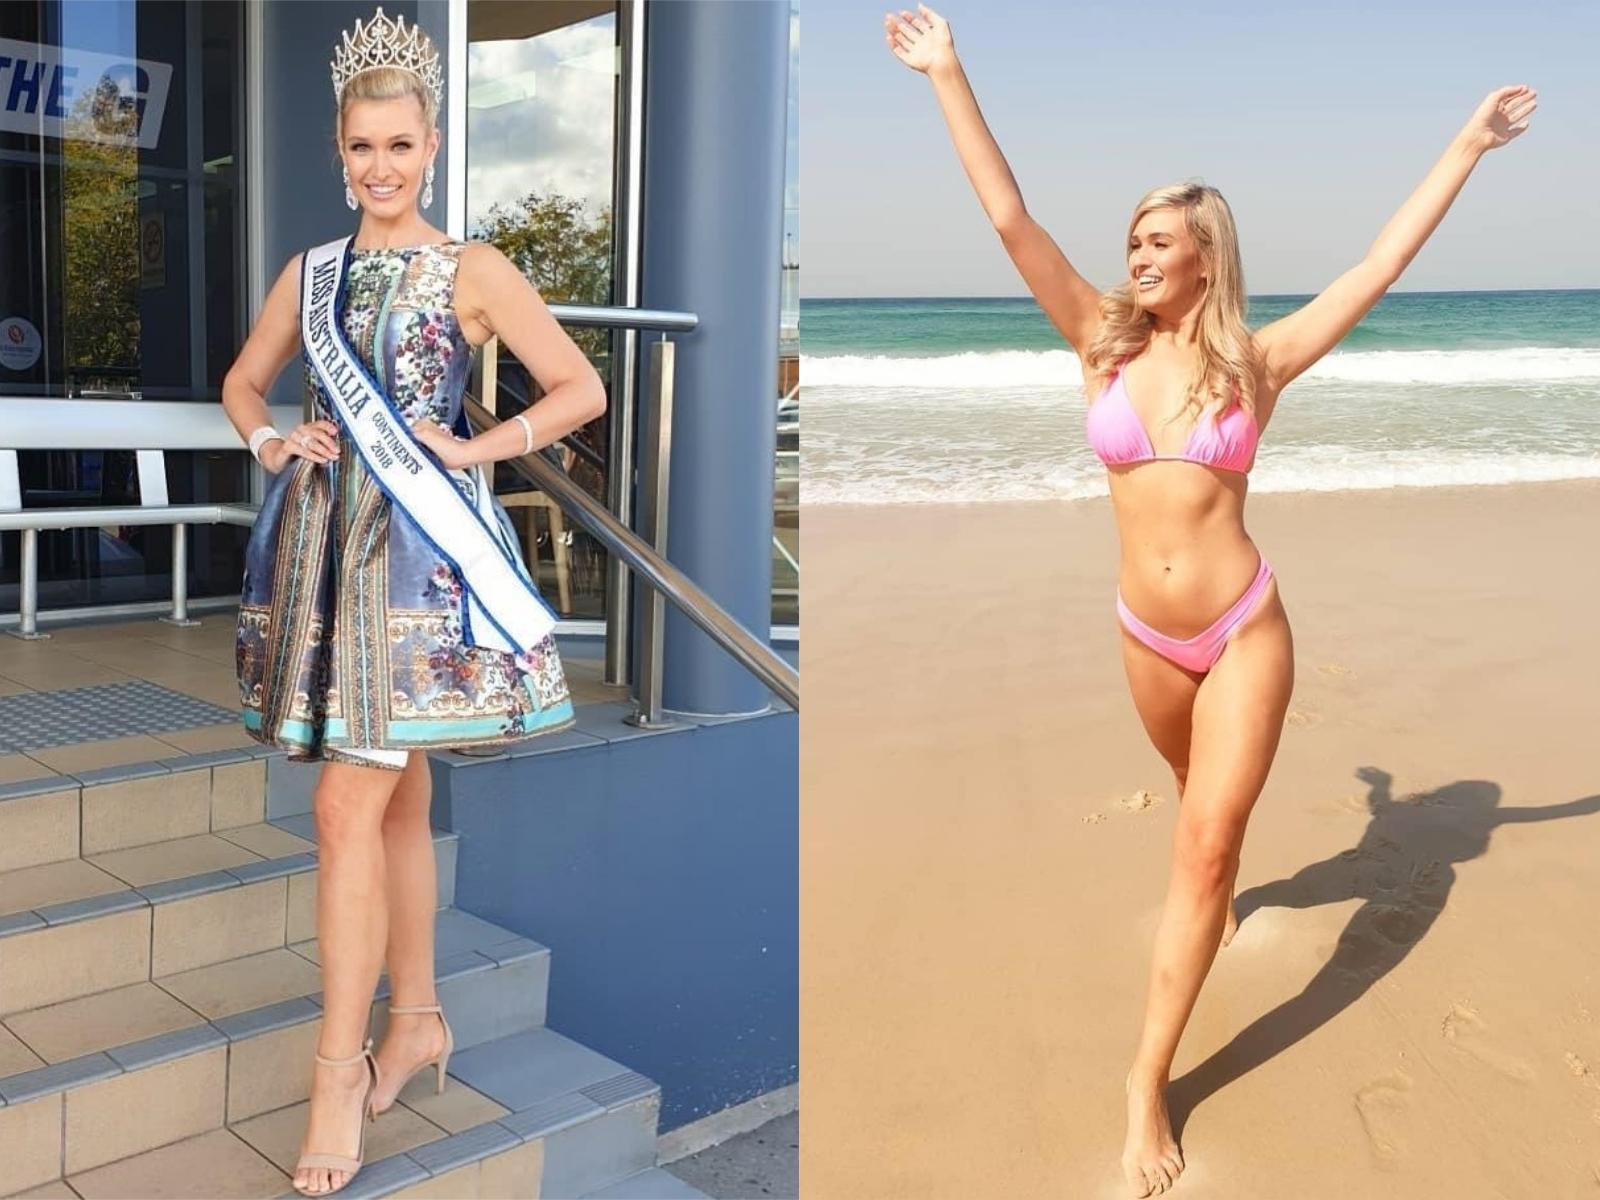 Школьники издевались над девочкой из-за веса, но она похудела всем назло и стала «мисс Австралия»